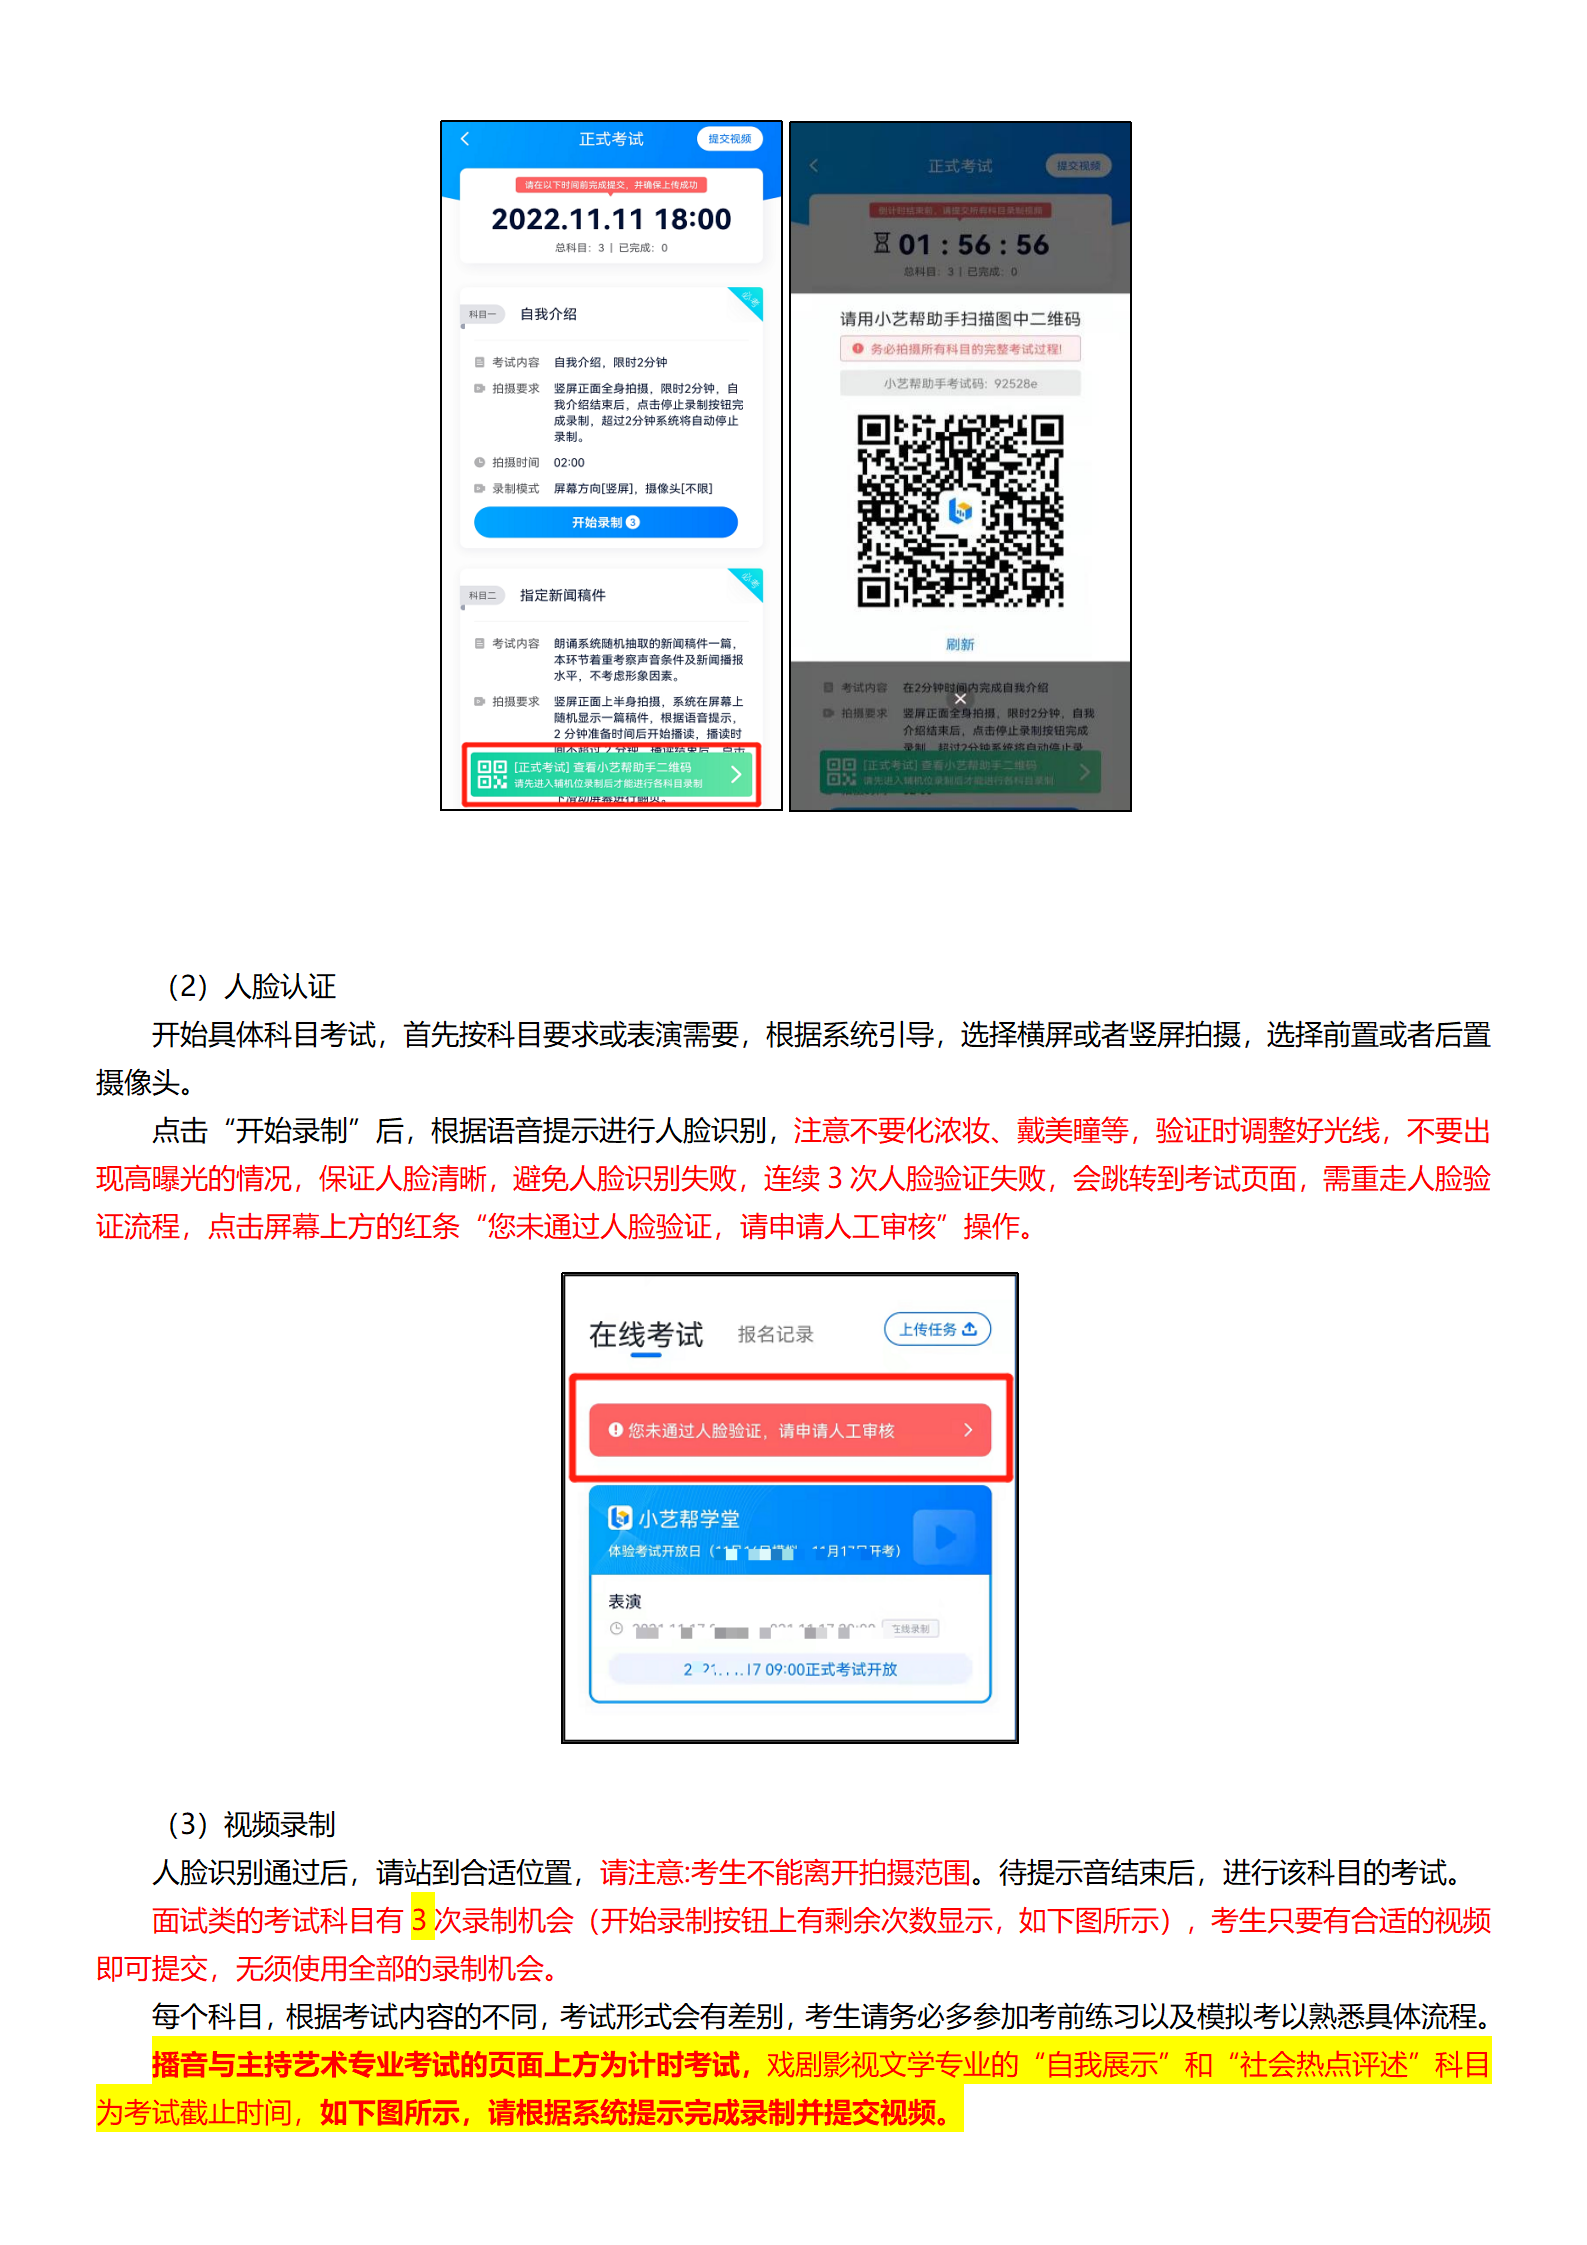 西安培华学院小艺帮4.0及小艺帮助手用户操作手册_10.png